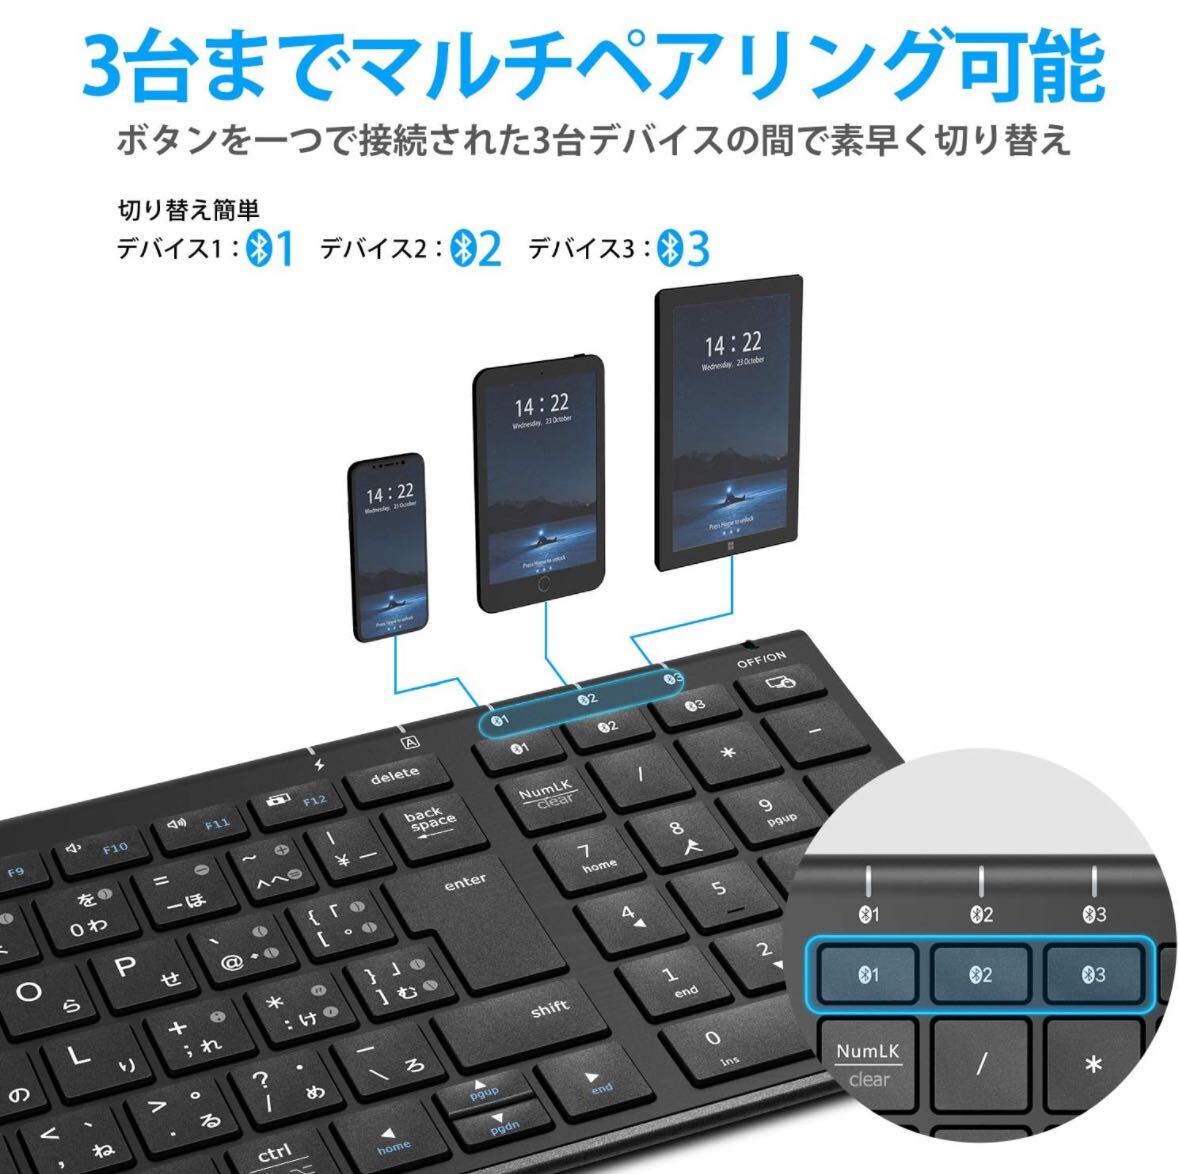 1008) iClever キーボード Bluetooth ワイヤレス キーボード 日本語 JIS配列 3台同時接続可能 テンキー付き 超薄型 キーボードの画像4